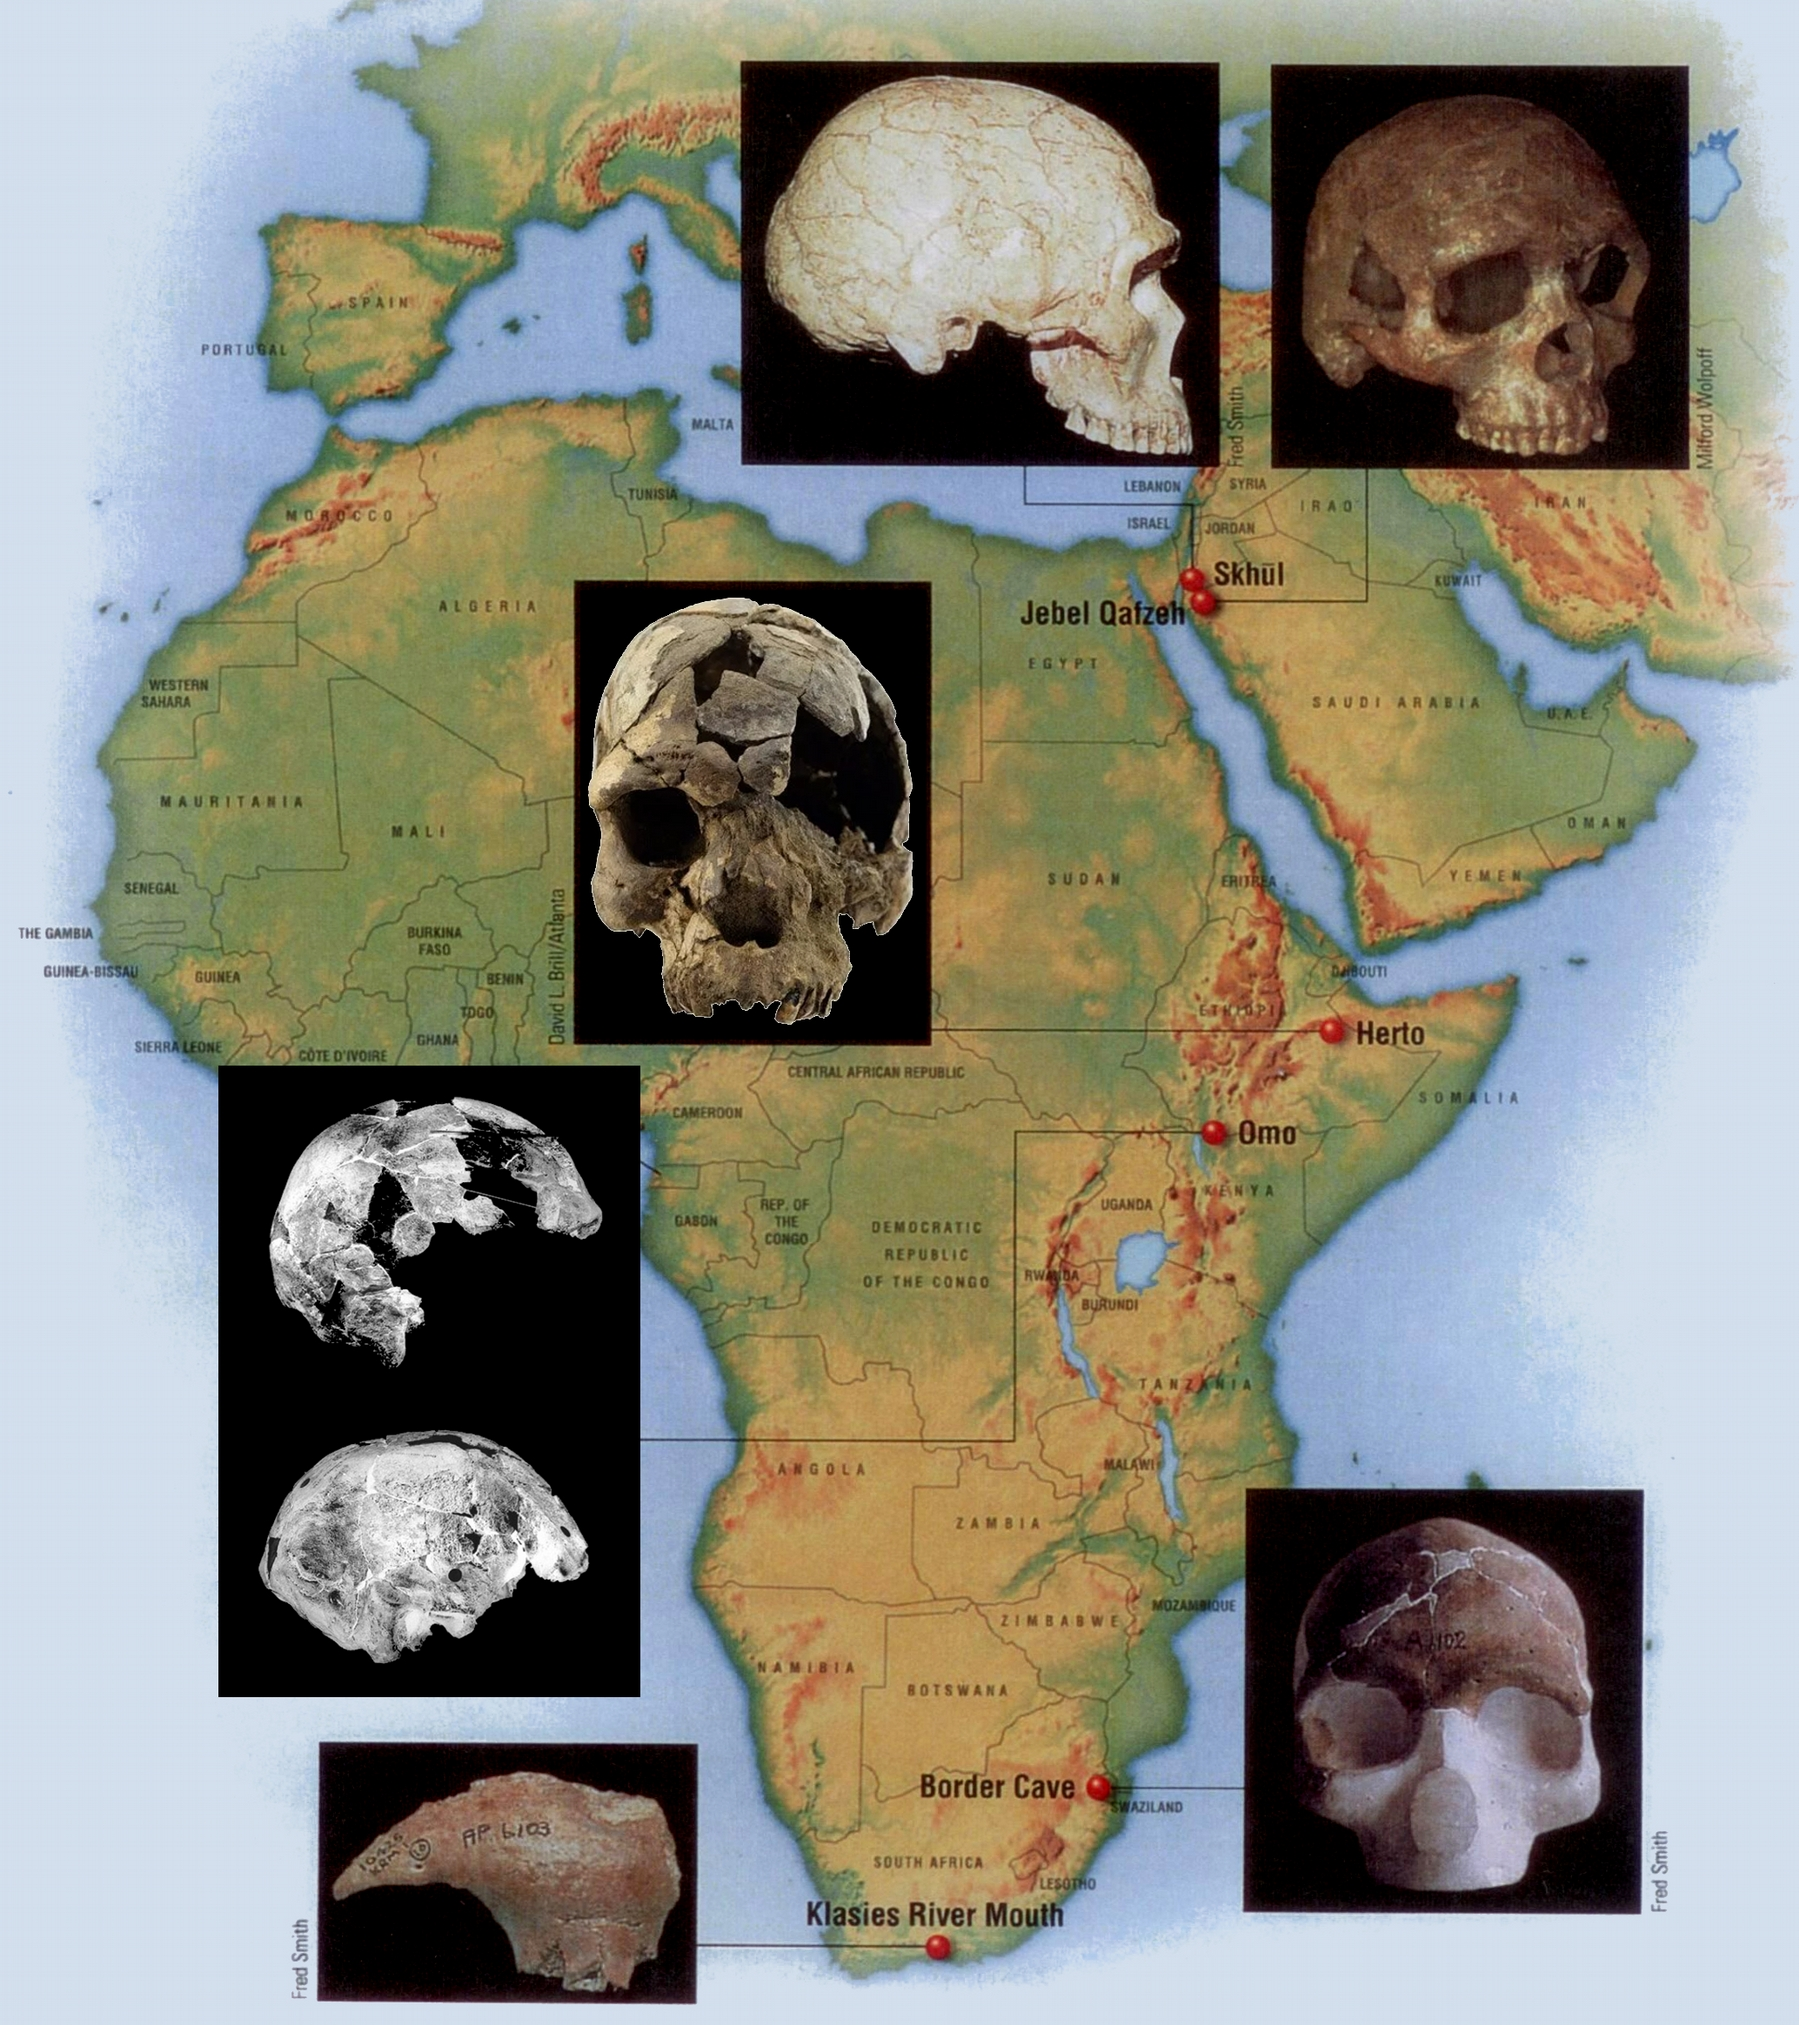 Τα κυριότερα απολιθώματα του ανατομικά σύγχρονου Σοφού Ανθρώπου: Αφρική Χρονολογία Θέση Εξελικτική σημασία 195.000 χρόνια πριν Όμο (Αιθιοπία) Έχουν βρεθεί δύο κρανία, το ένα ελαφρώς πιο εύρωστο.